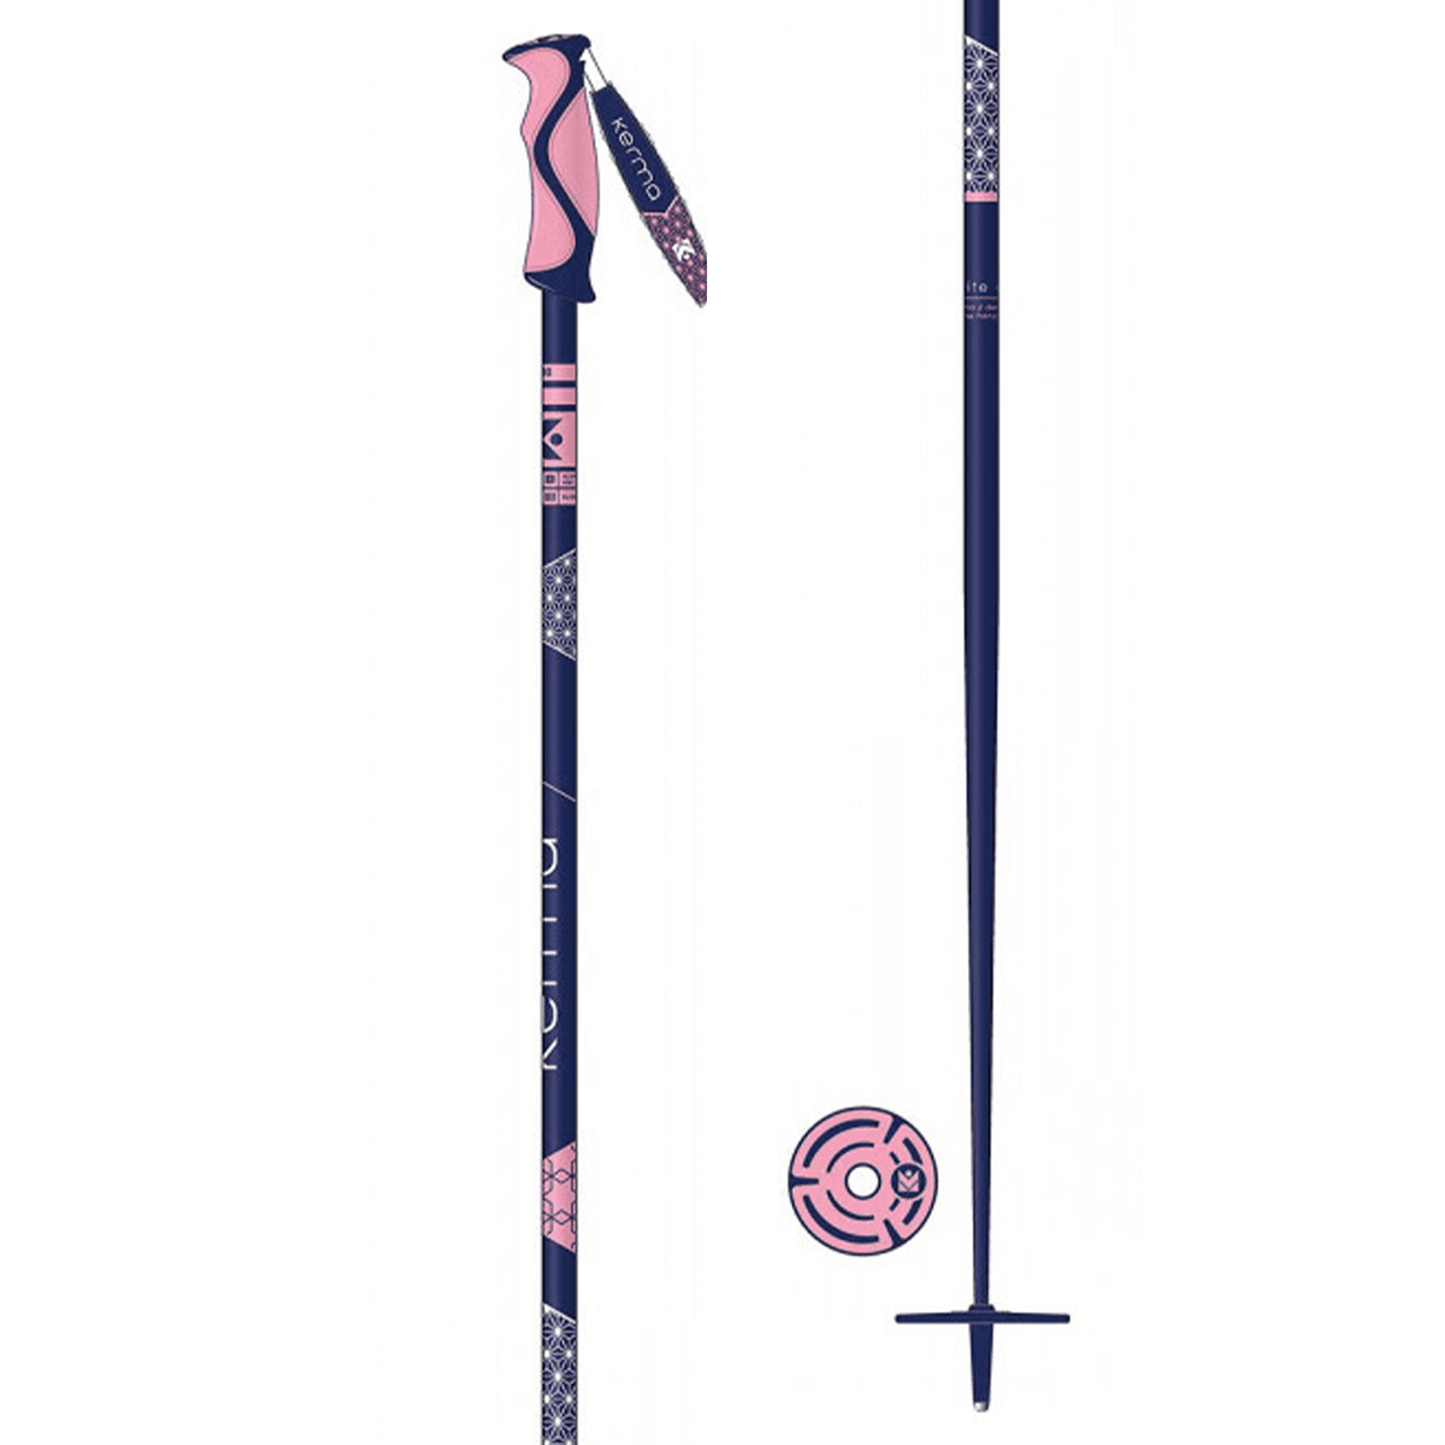 Kerma Elite Aluminium Women's Ski Pole